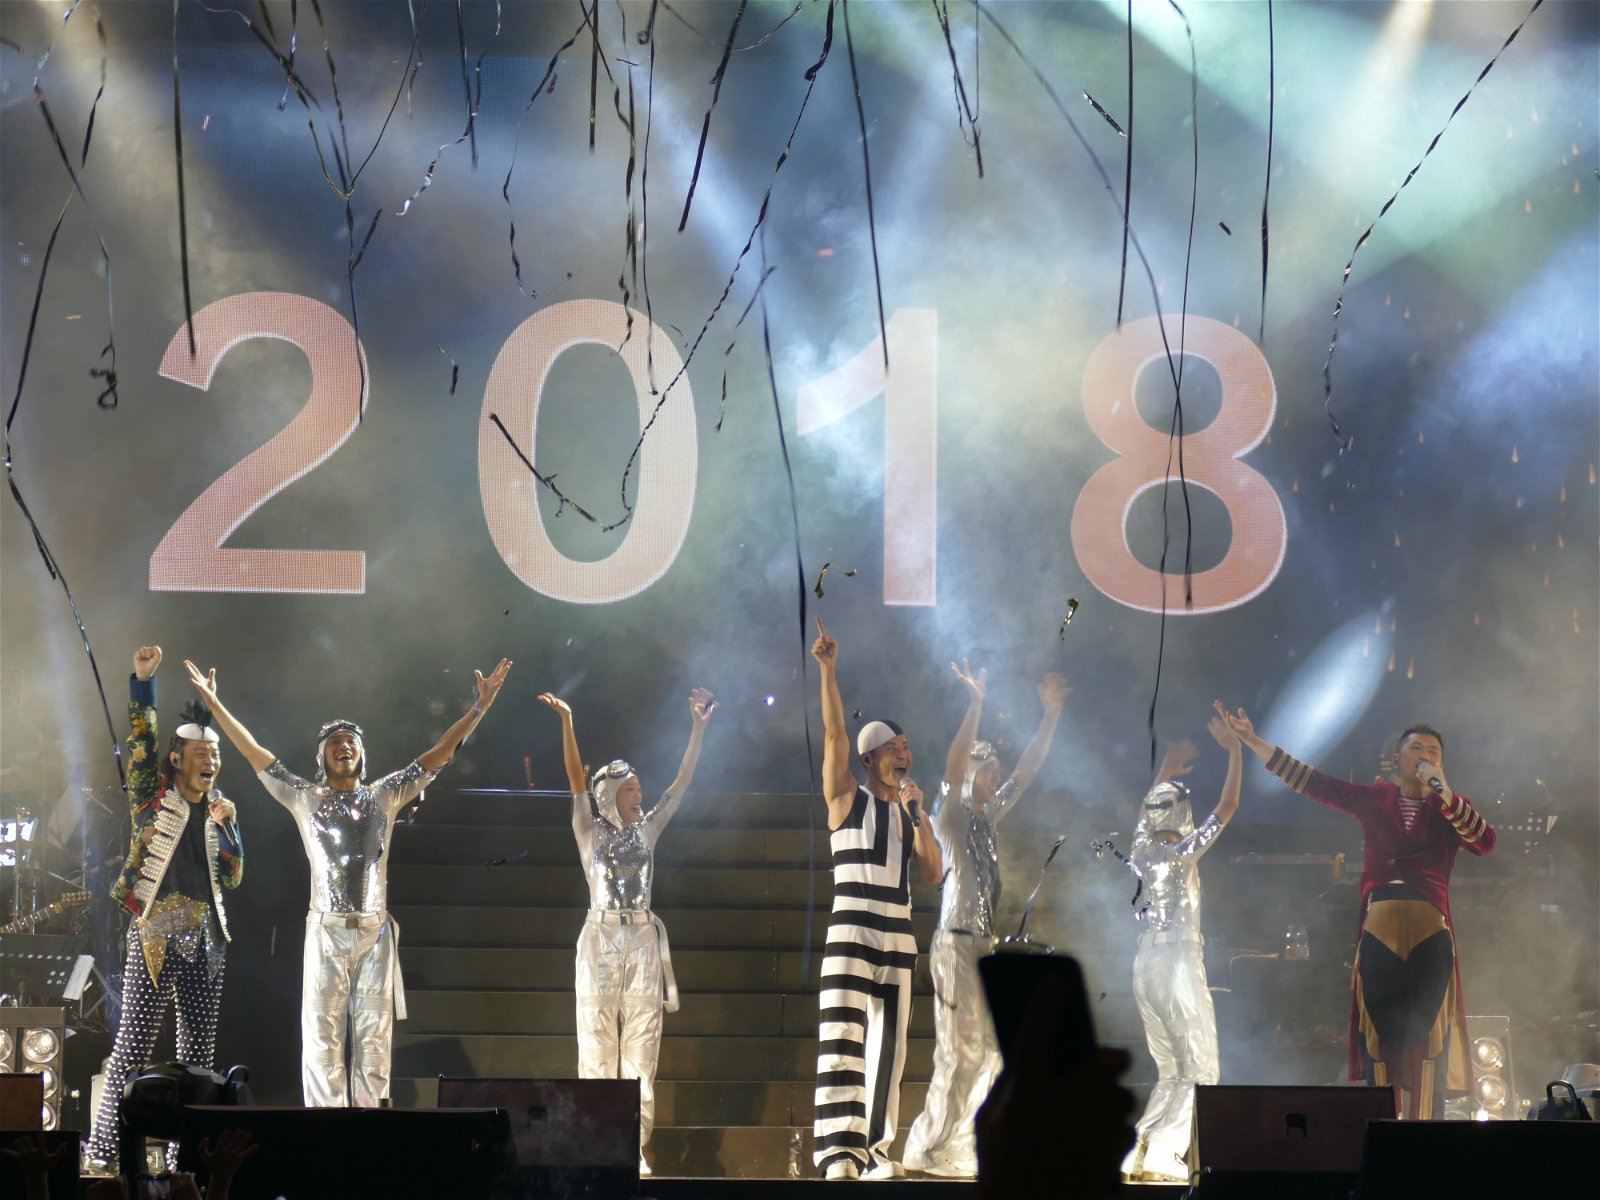 迎来20 18 年的第一天， 草蜢为现场歌迷献上祝福，希望新的一年里，接下来的每一天开心快乐。